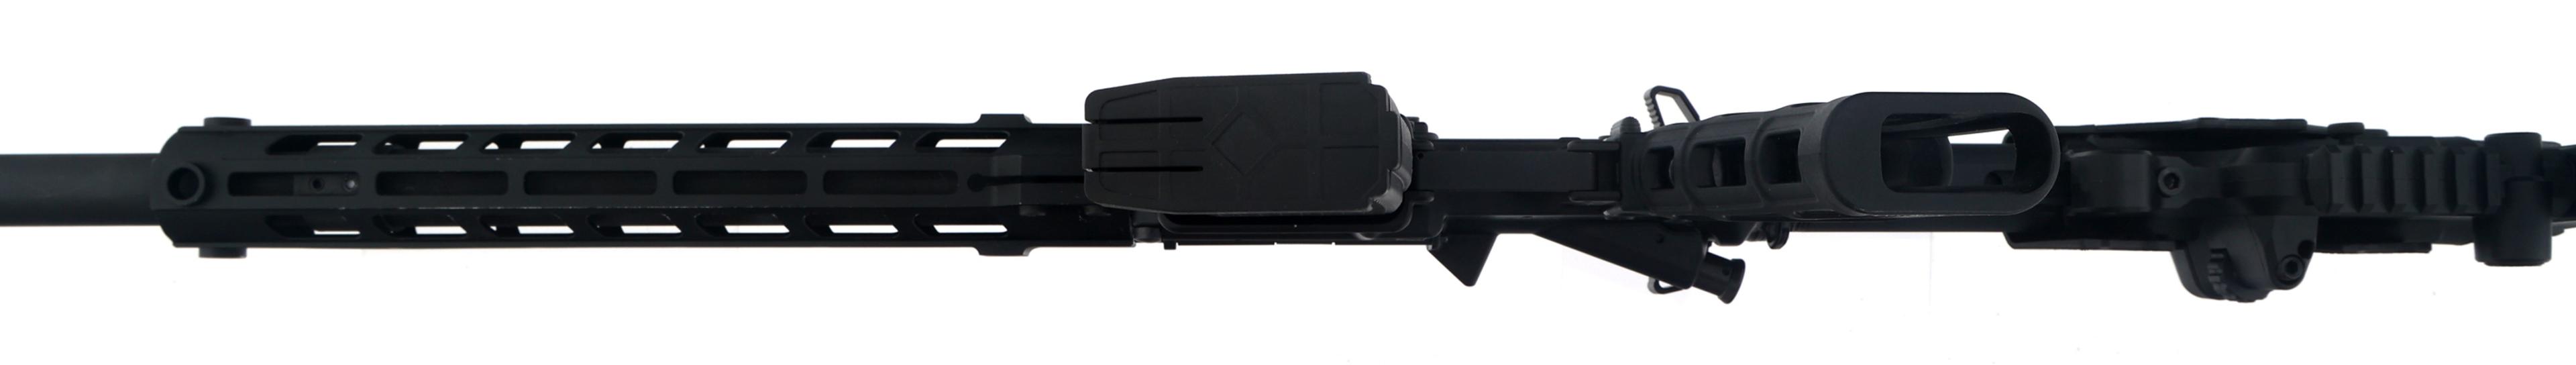 AERO PRECISION MODEL X15 12.7x42mm CALIBER RIFLE